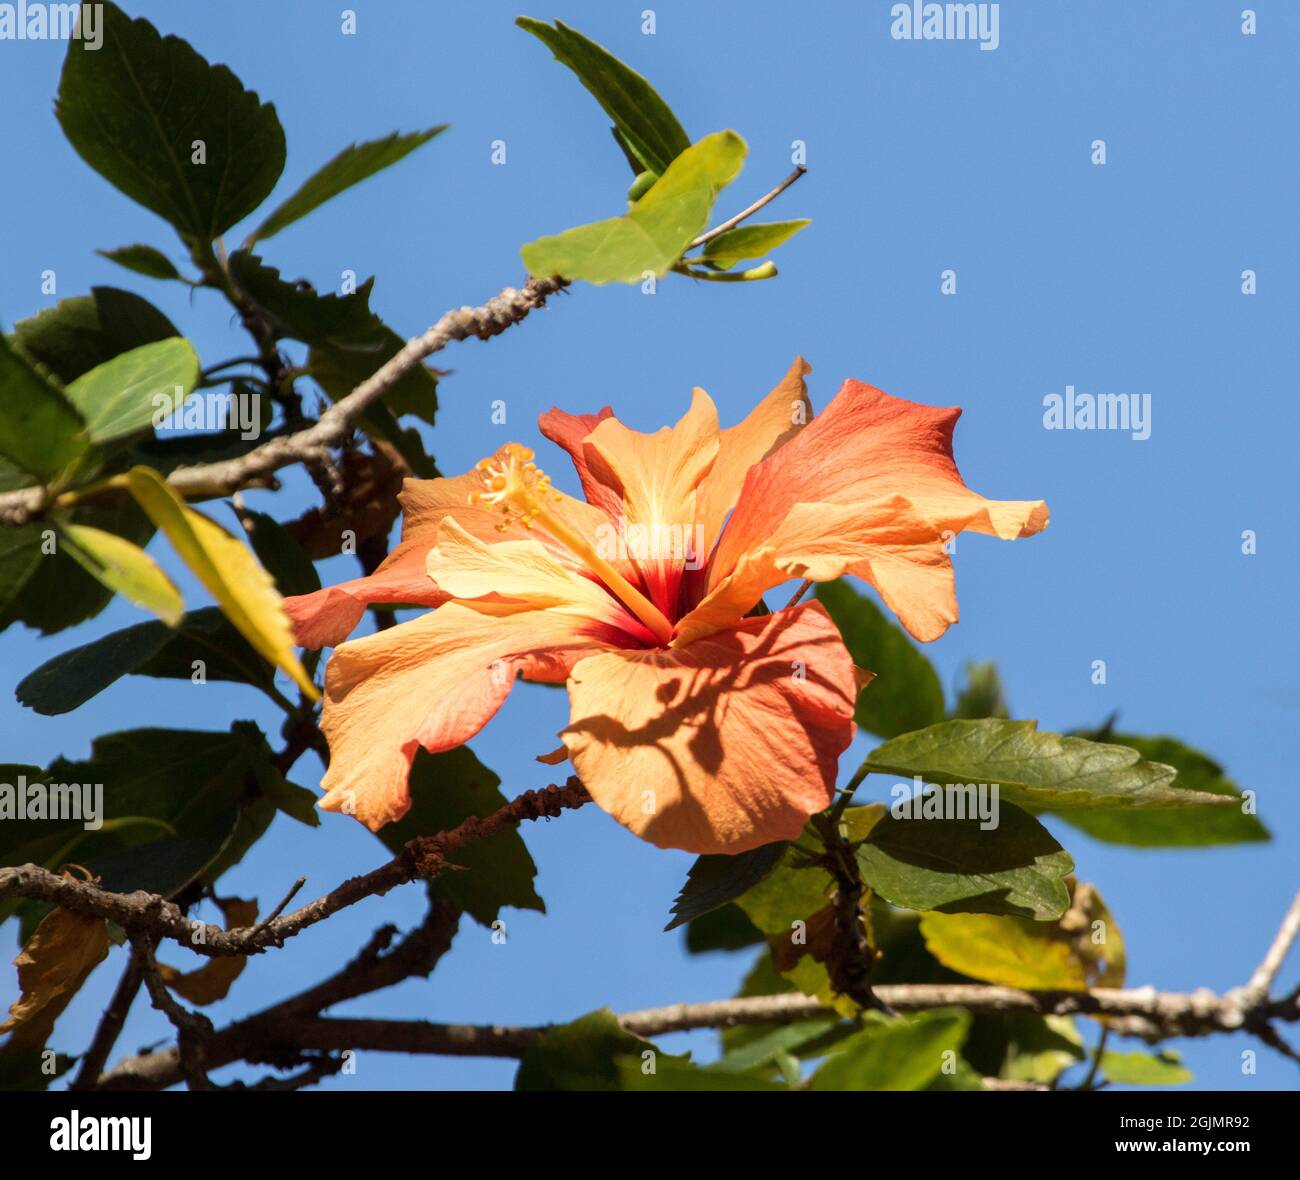 Fleur d'orange, cultivar Hibiscus rosa-sinensis, contre un ciel bleu clair Banque D'Images